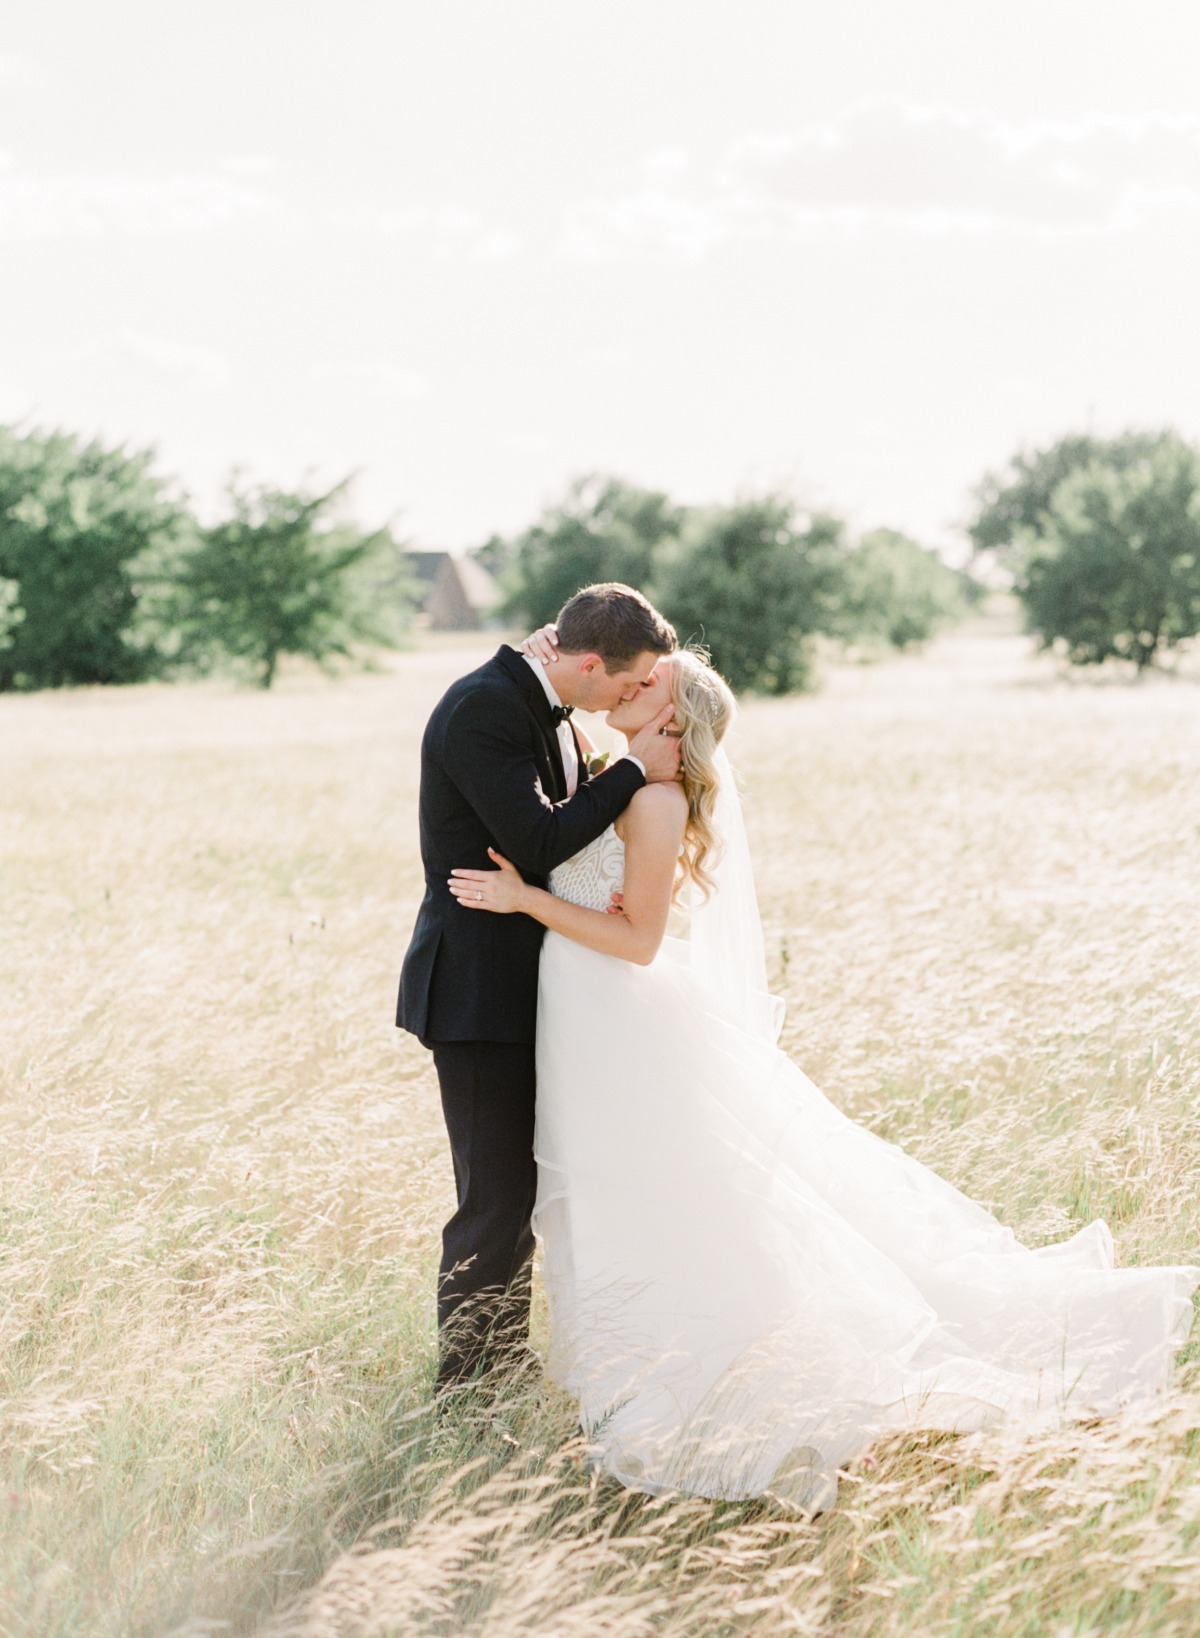 Dreamy white barn wedding in Texas